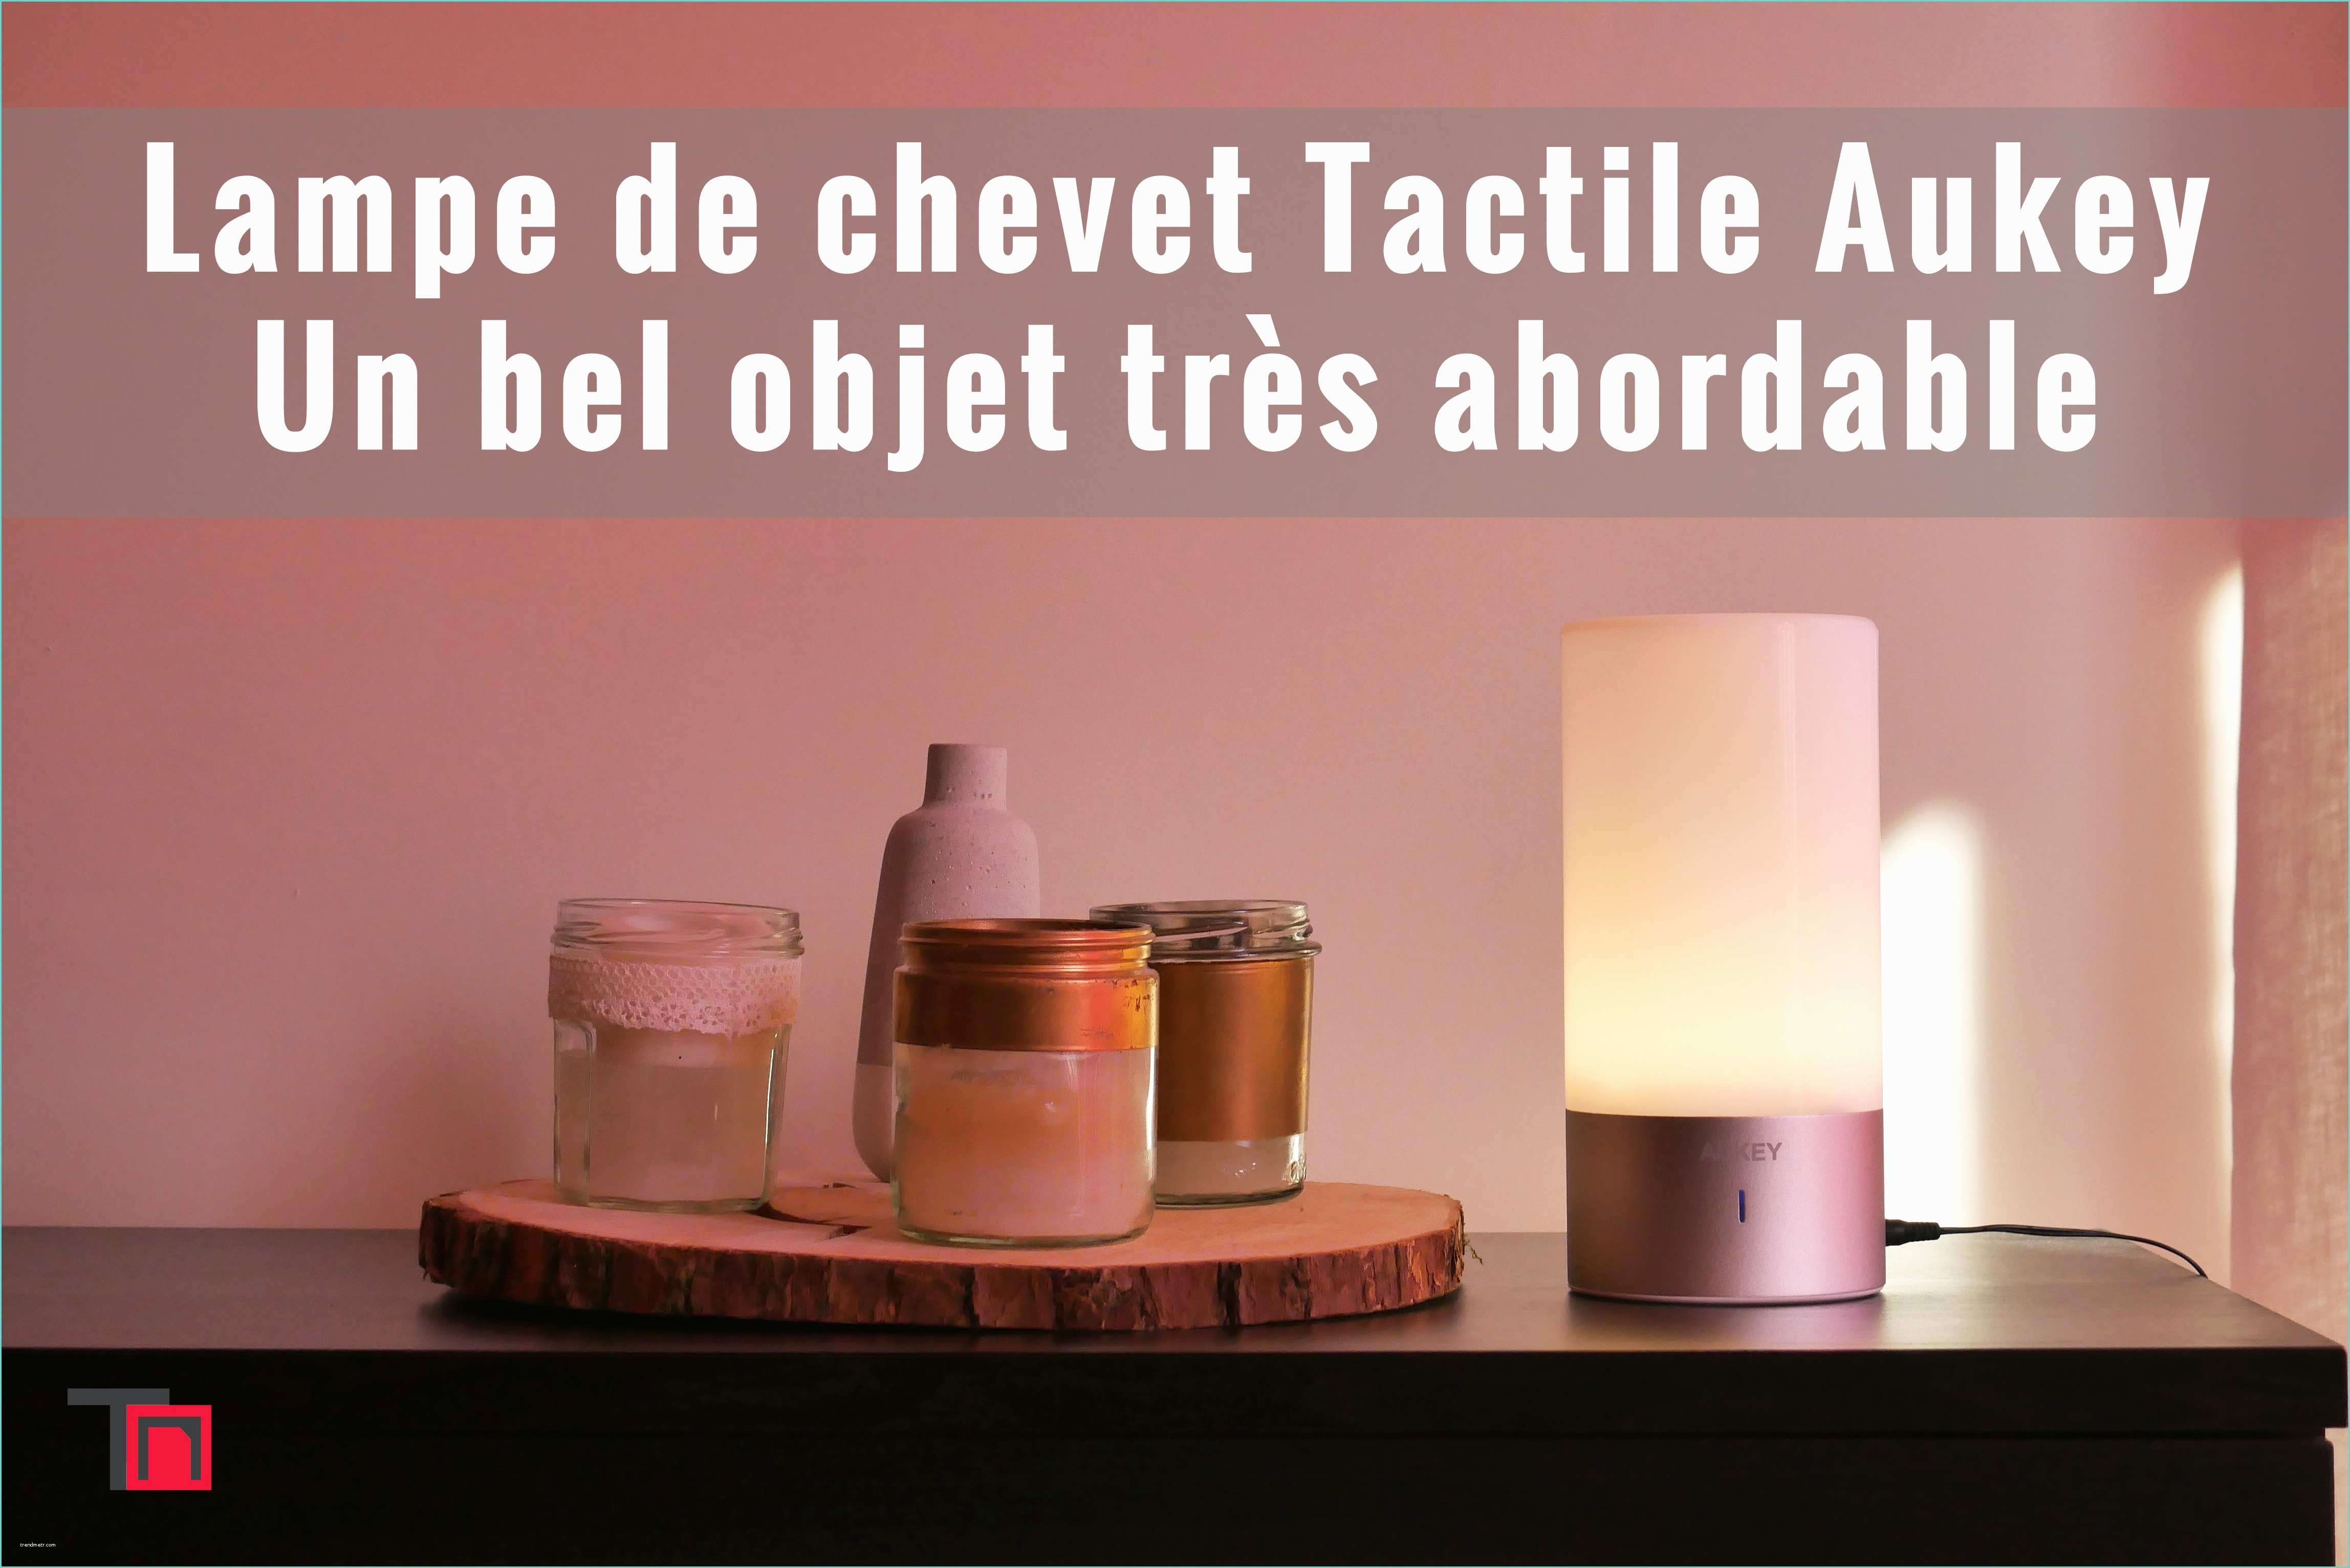 Lampe De Chevet Tactile but Lampe De Chevet Tactile Sensitive Aukey – Un Bel Objet